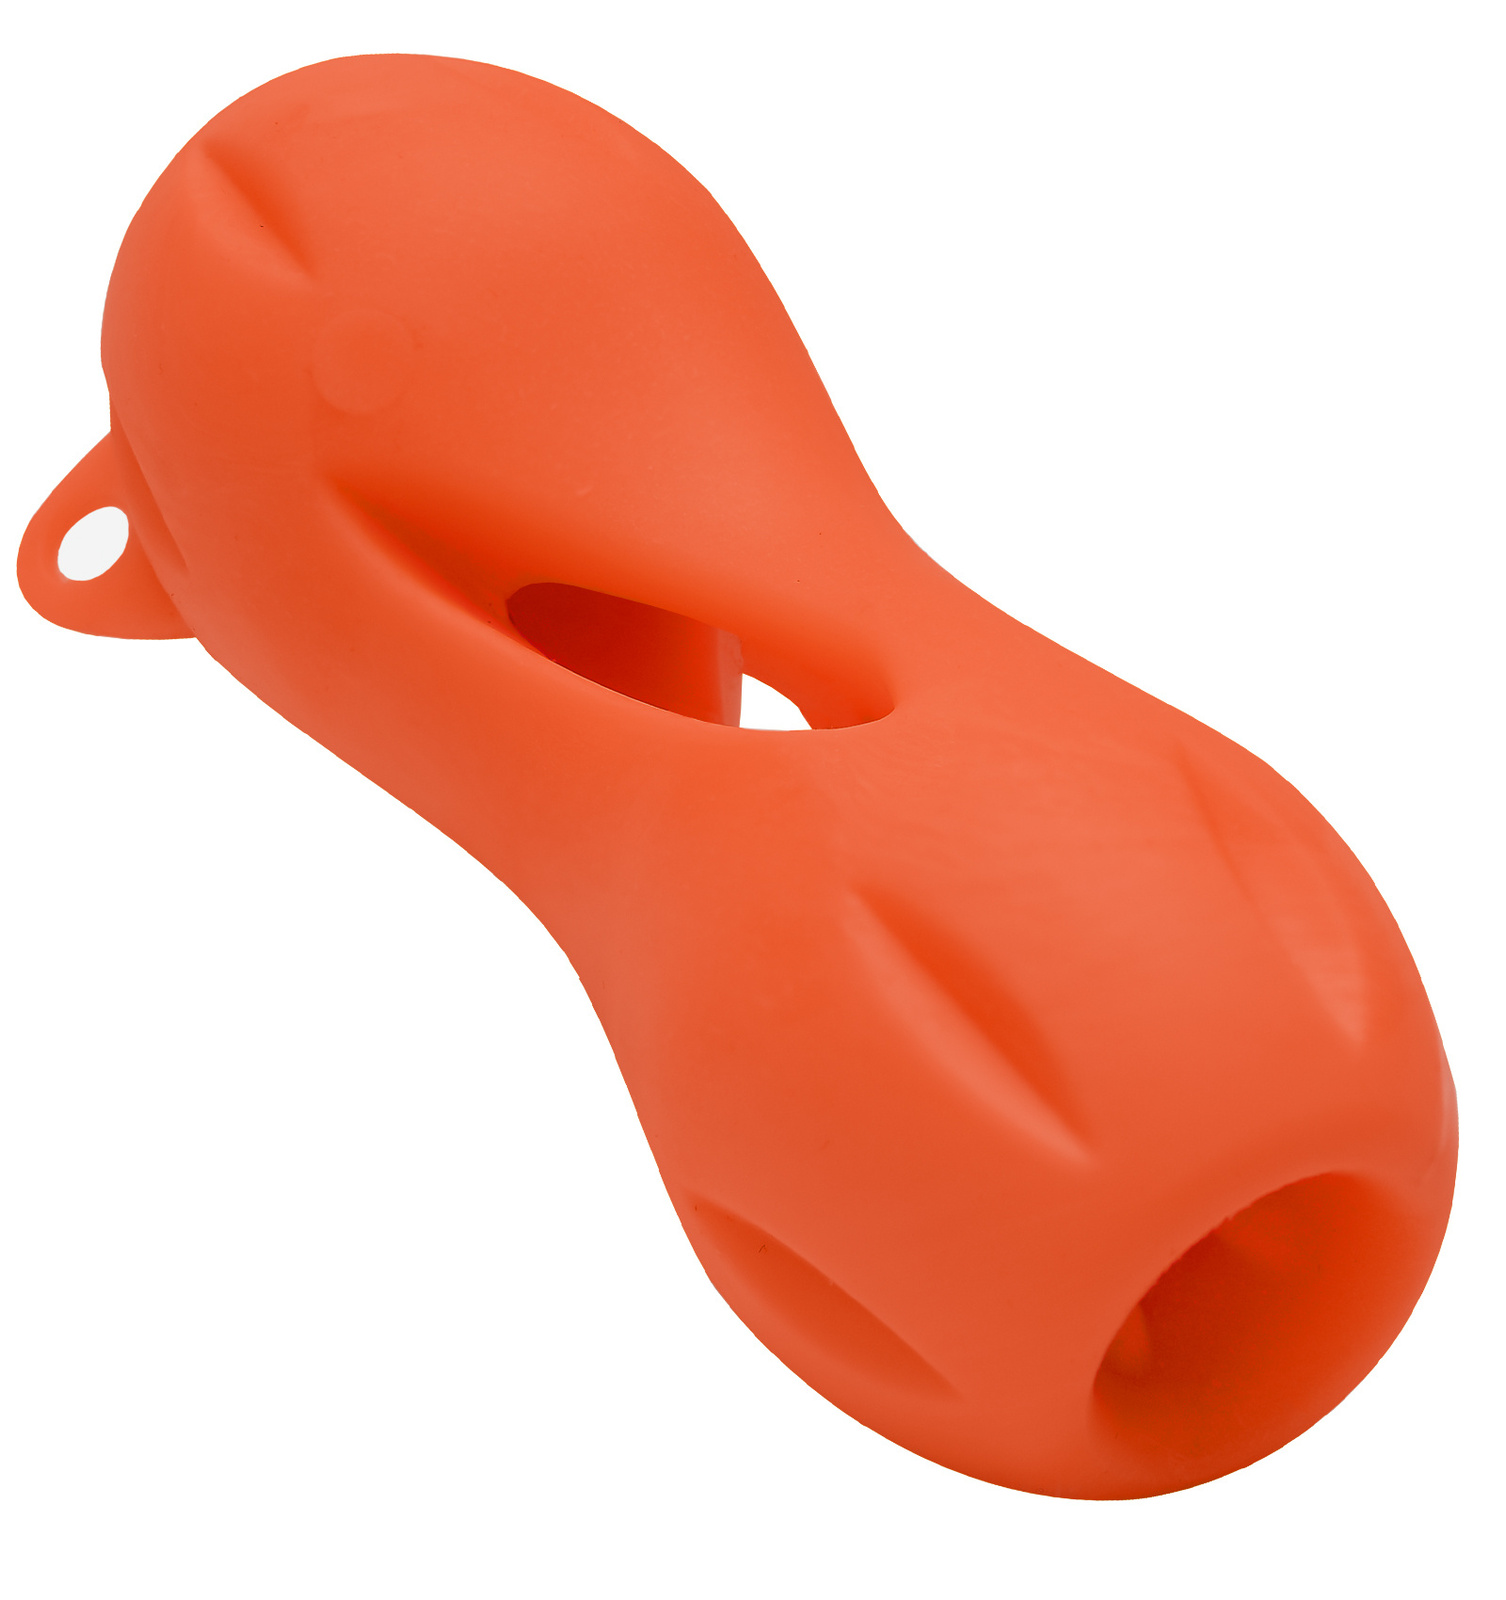 PETSHOP игрушки PETSHOP игрушки игрушка для собак Кость резиновая для лакомств, оранжевая (16х6,5 см)